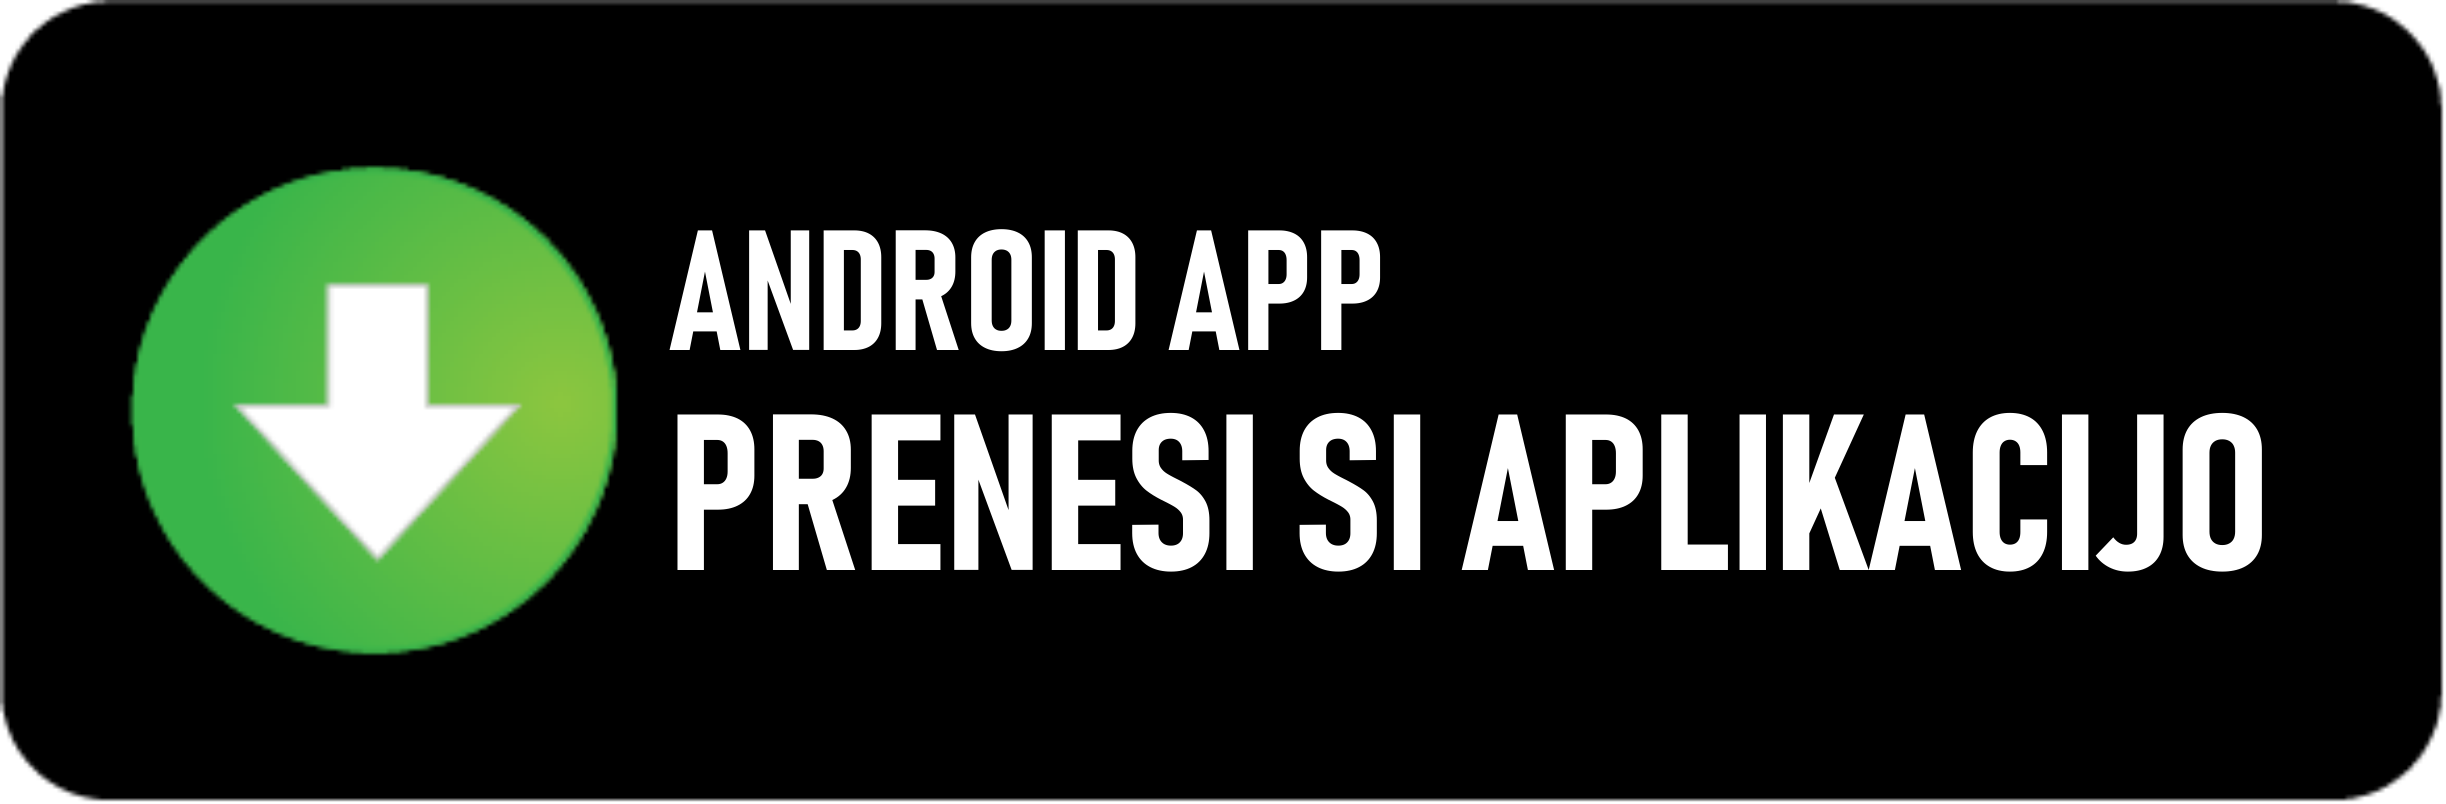 Android aplikacija